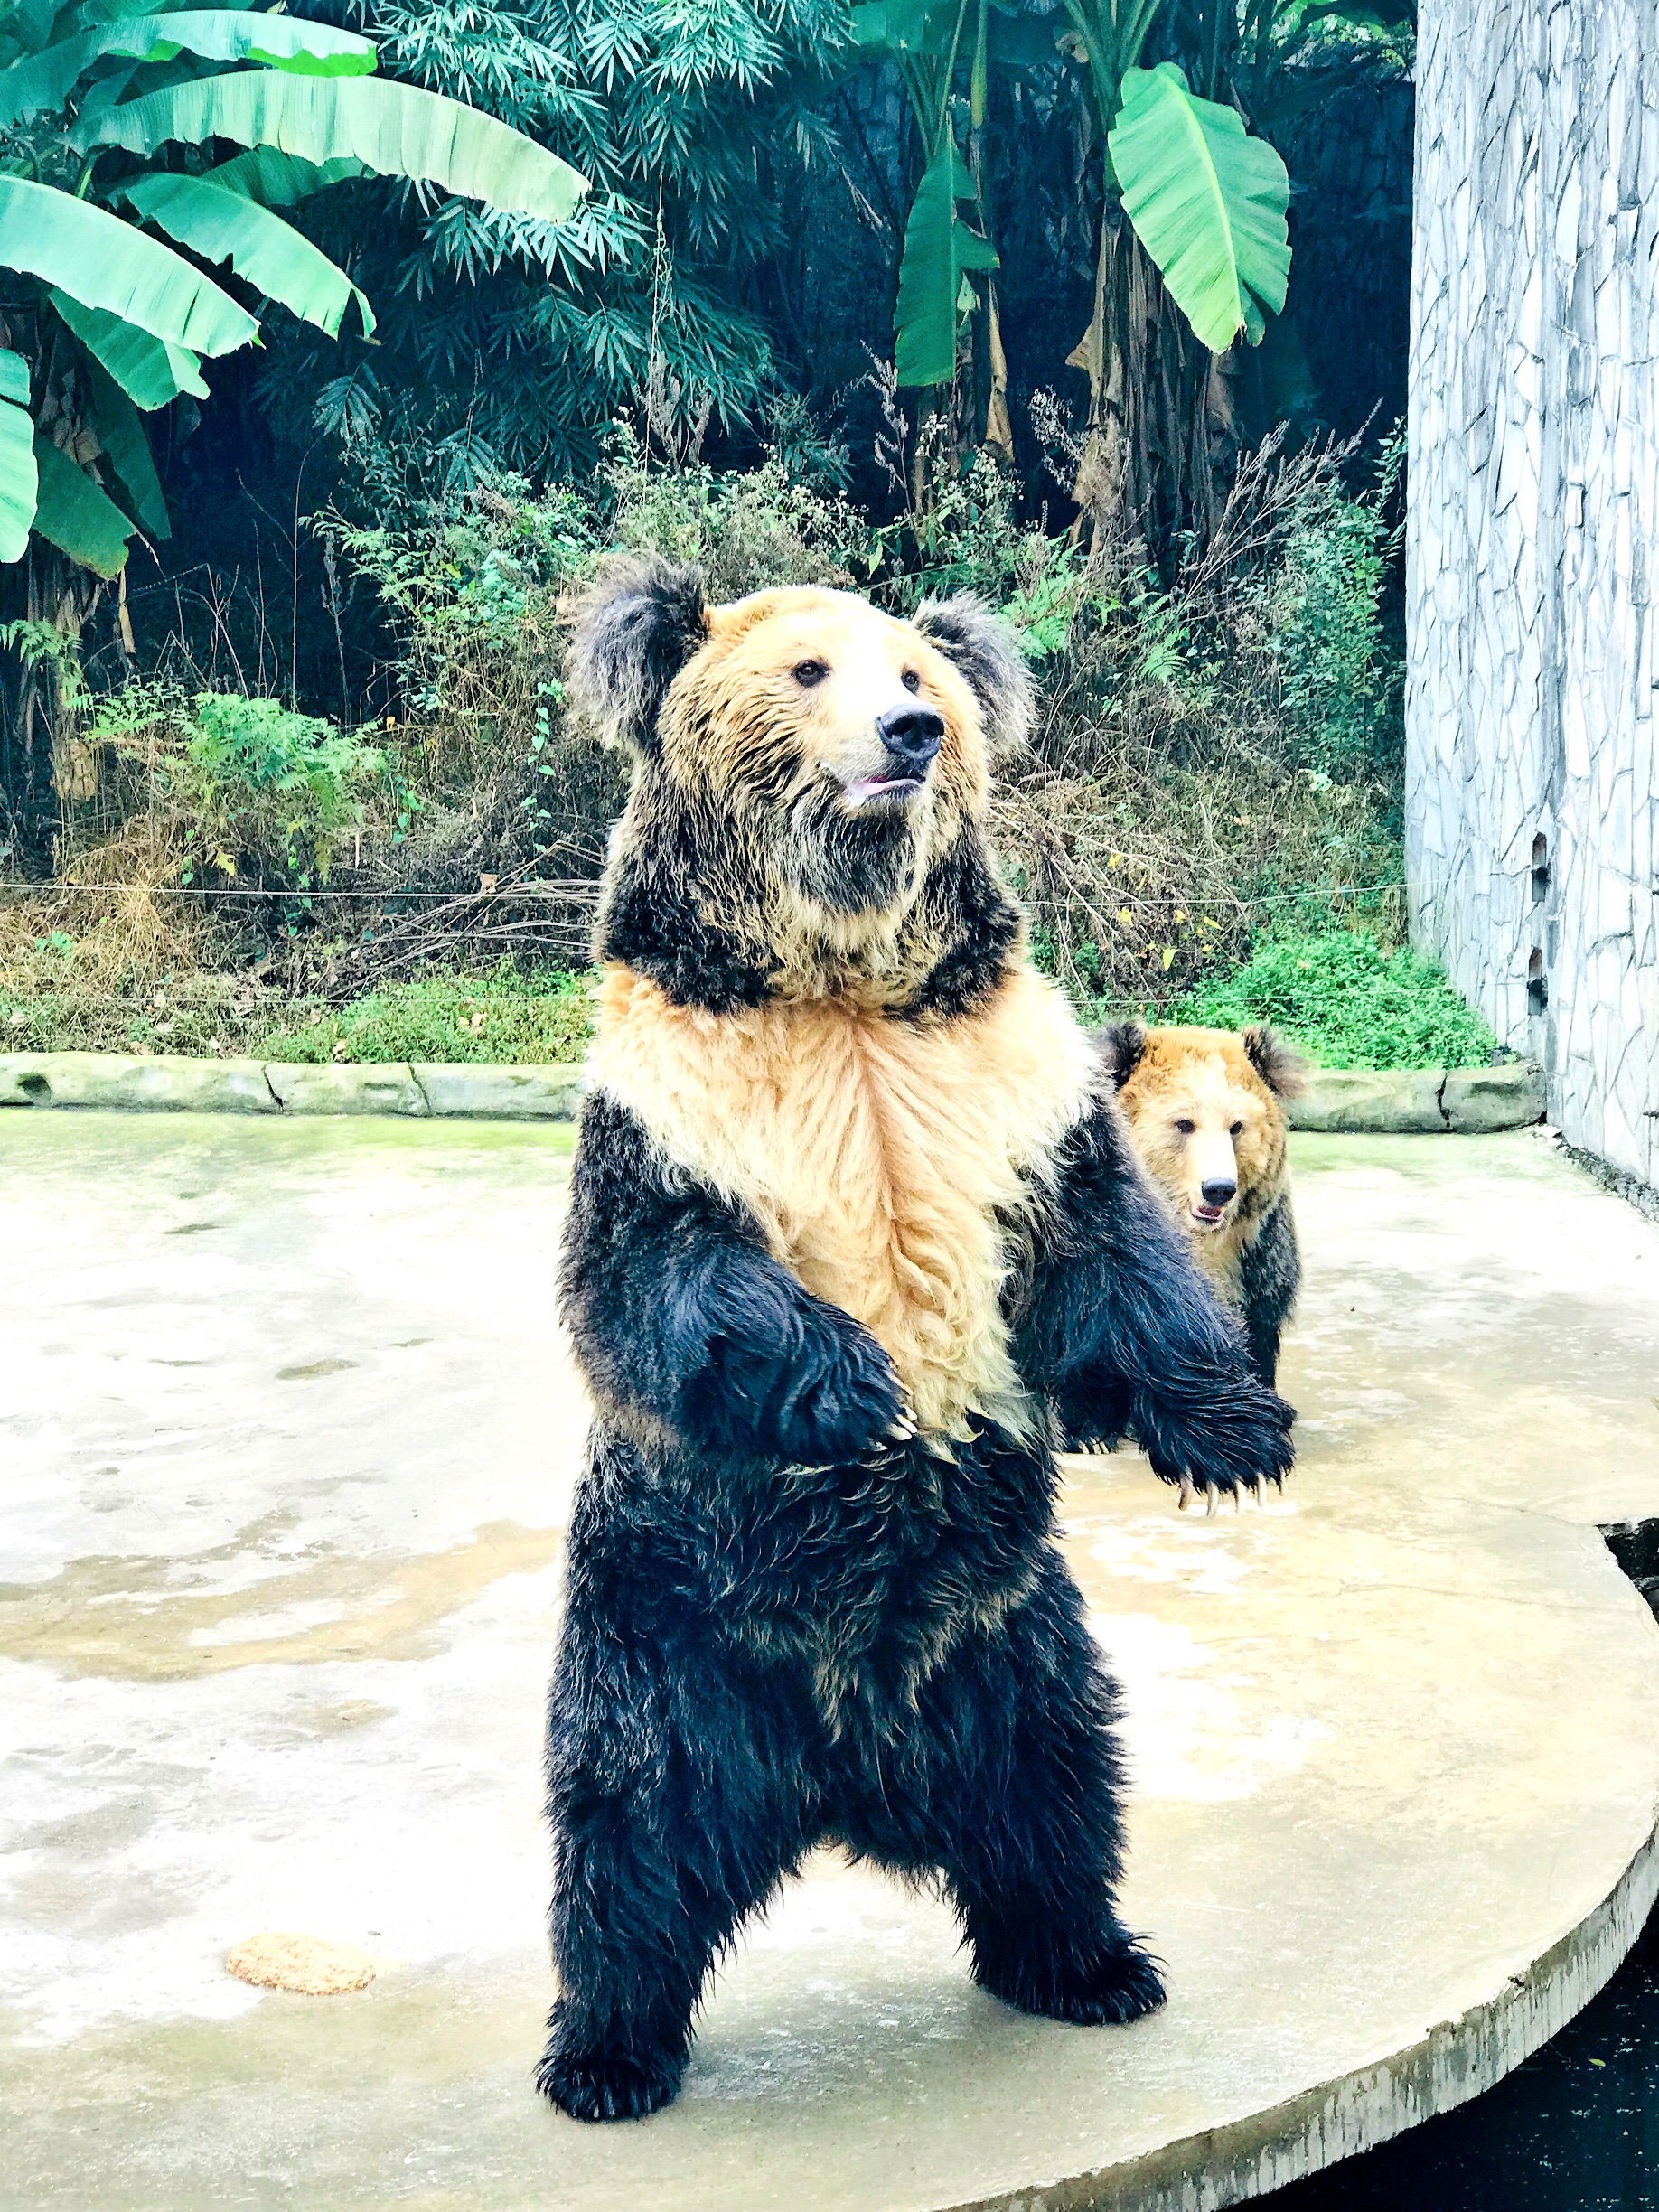 淡季去喂长大了的熊孩子，到贵州唯一的野生动物园